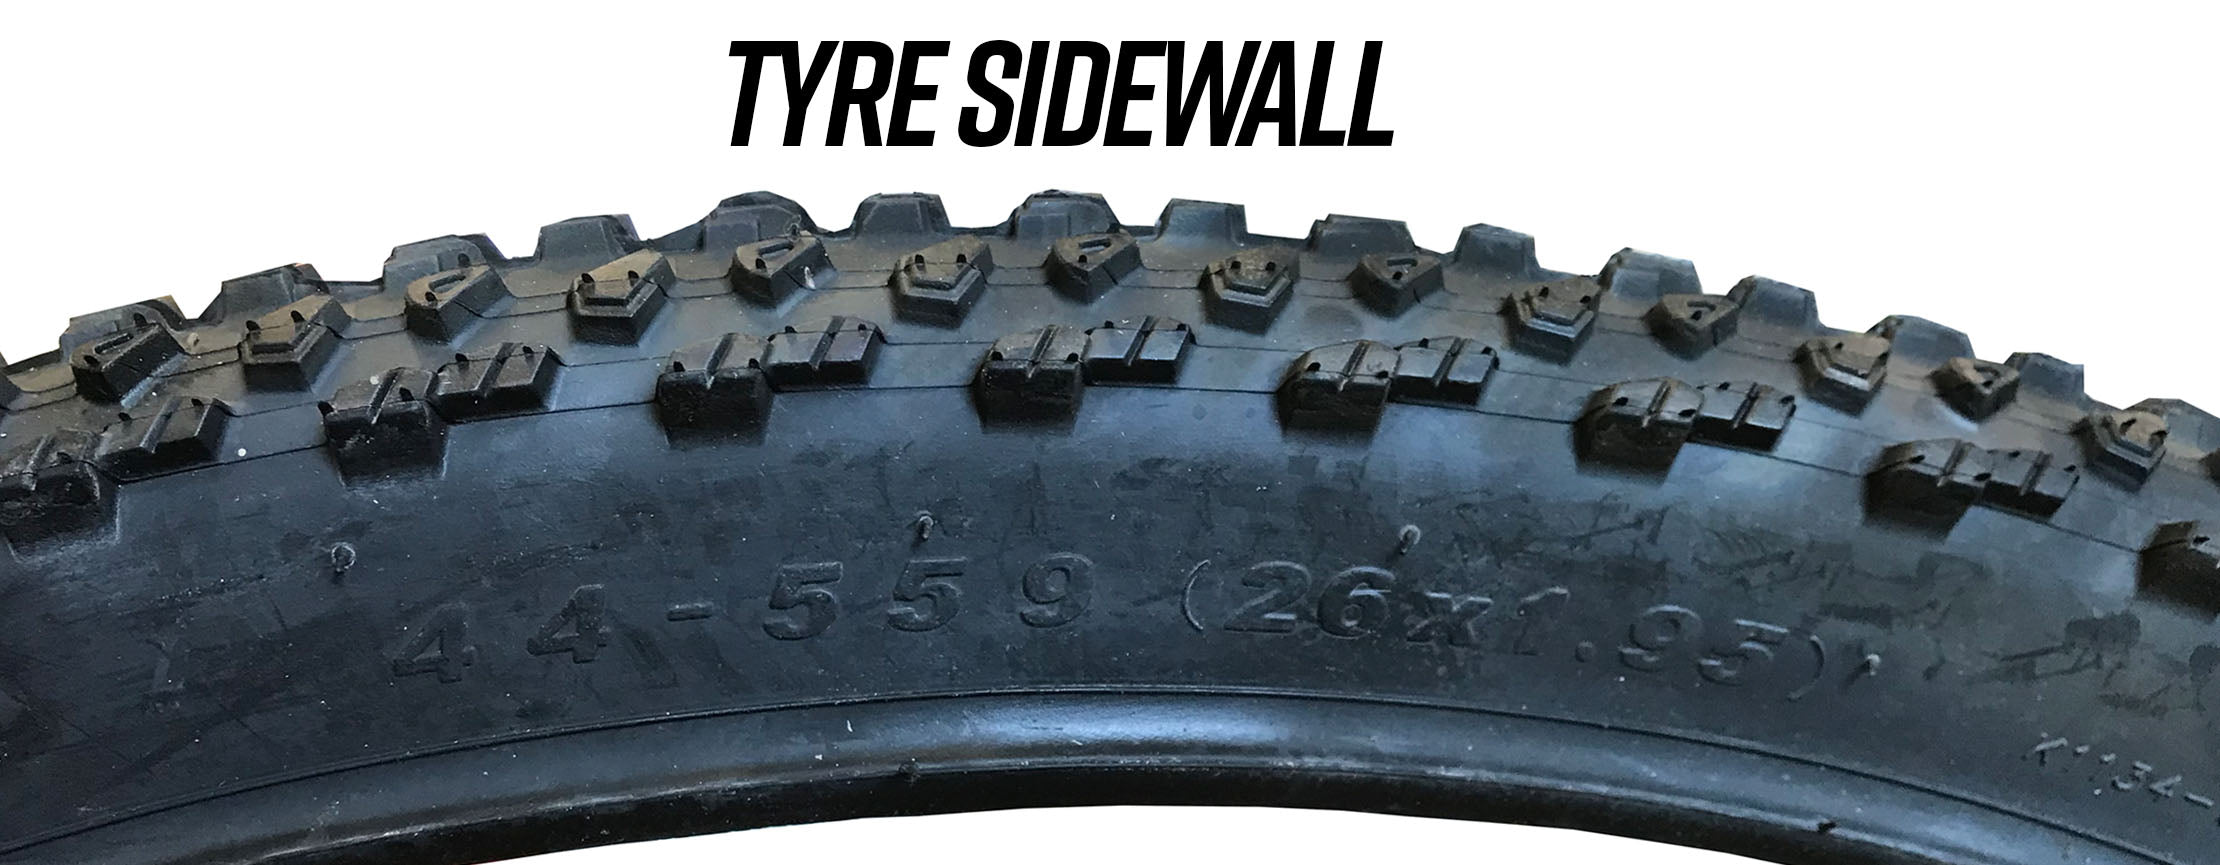 Bike tyre side wall showing bike tyre sizes